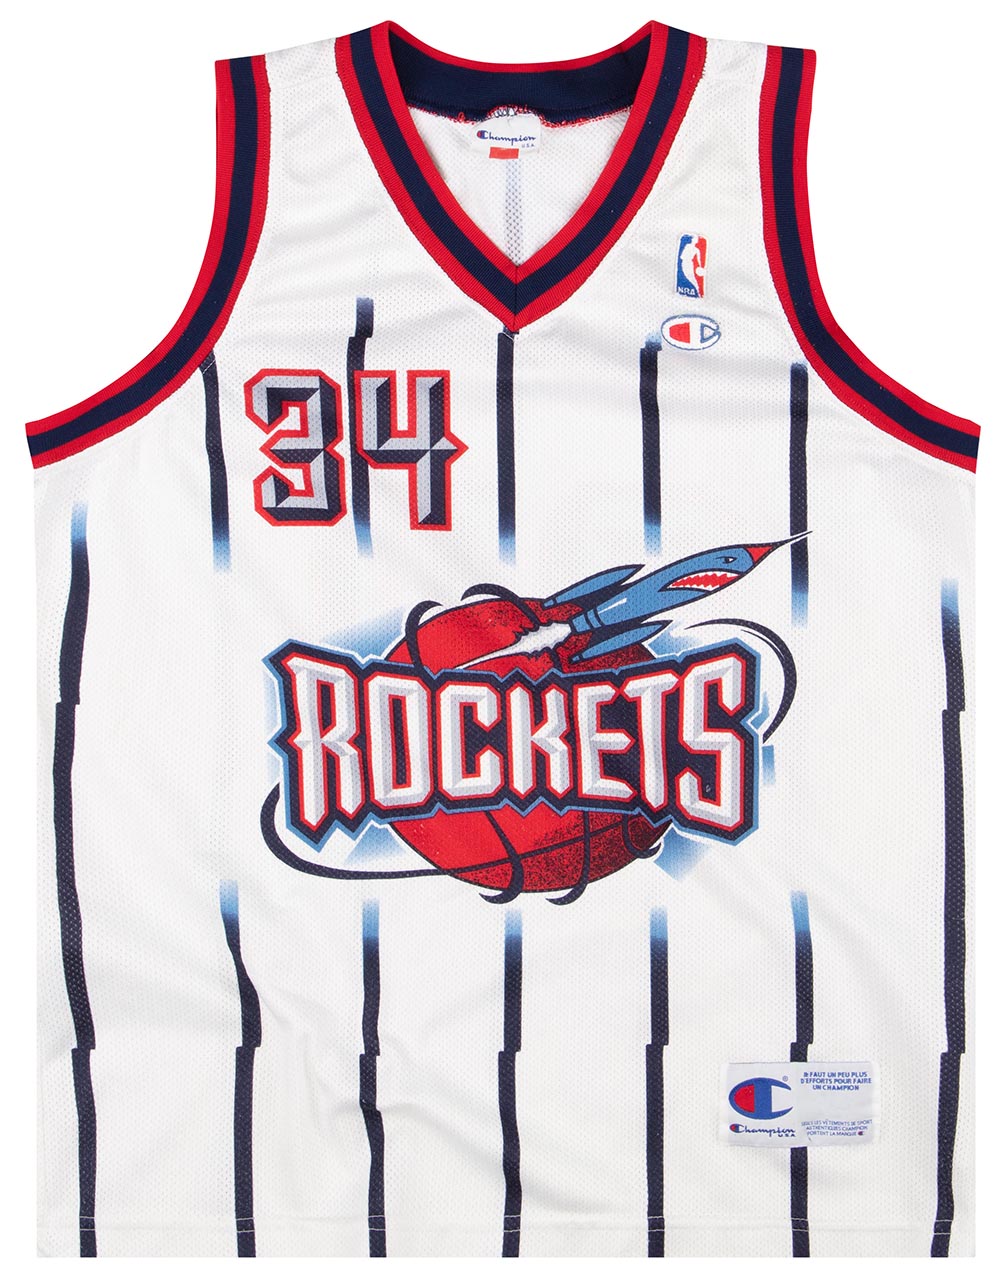 Buy jersey Houston Rockets 1972 - 1995